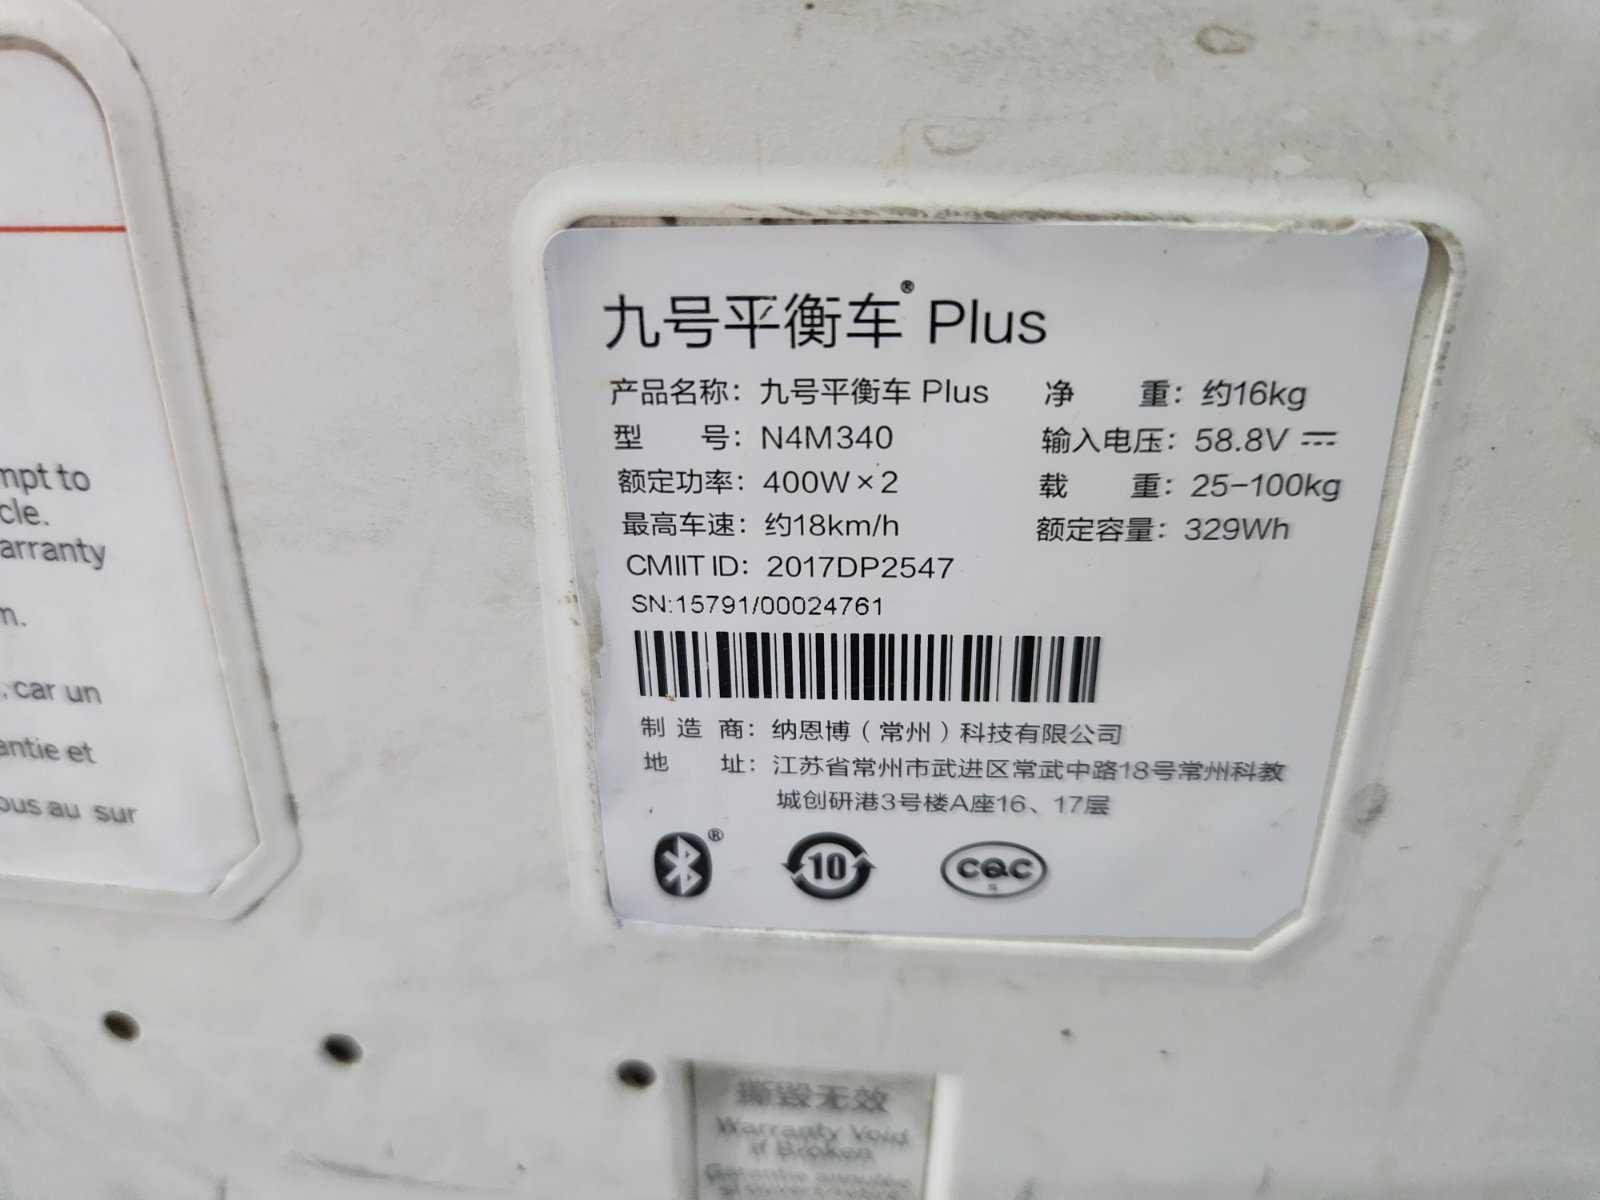 Xiaomi N4M340 Ninebot Plus Електрически скутер самобалансиращ